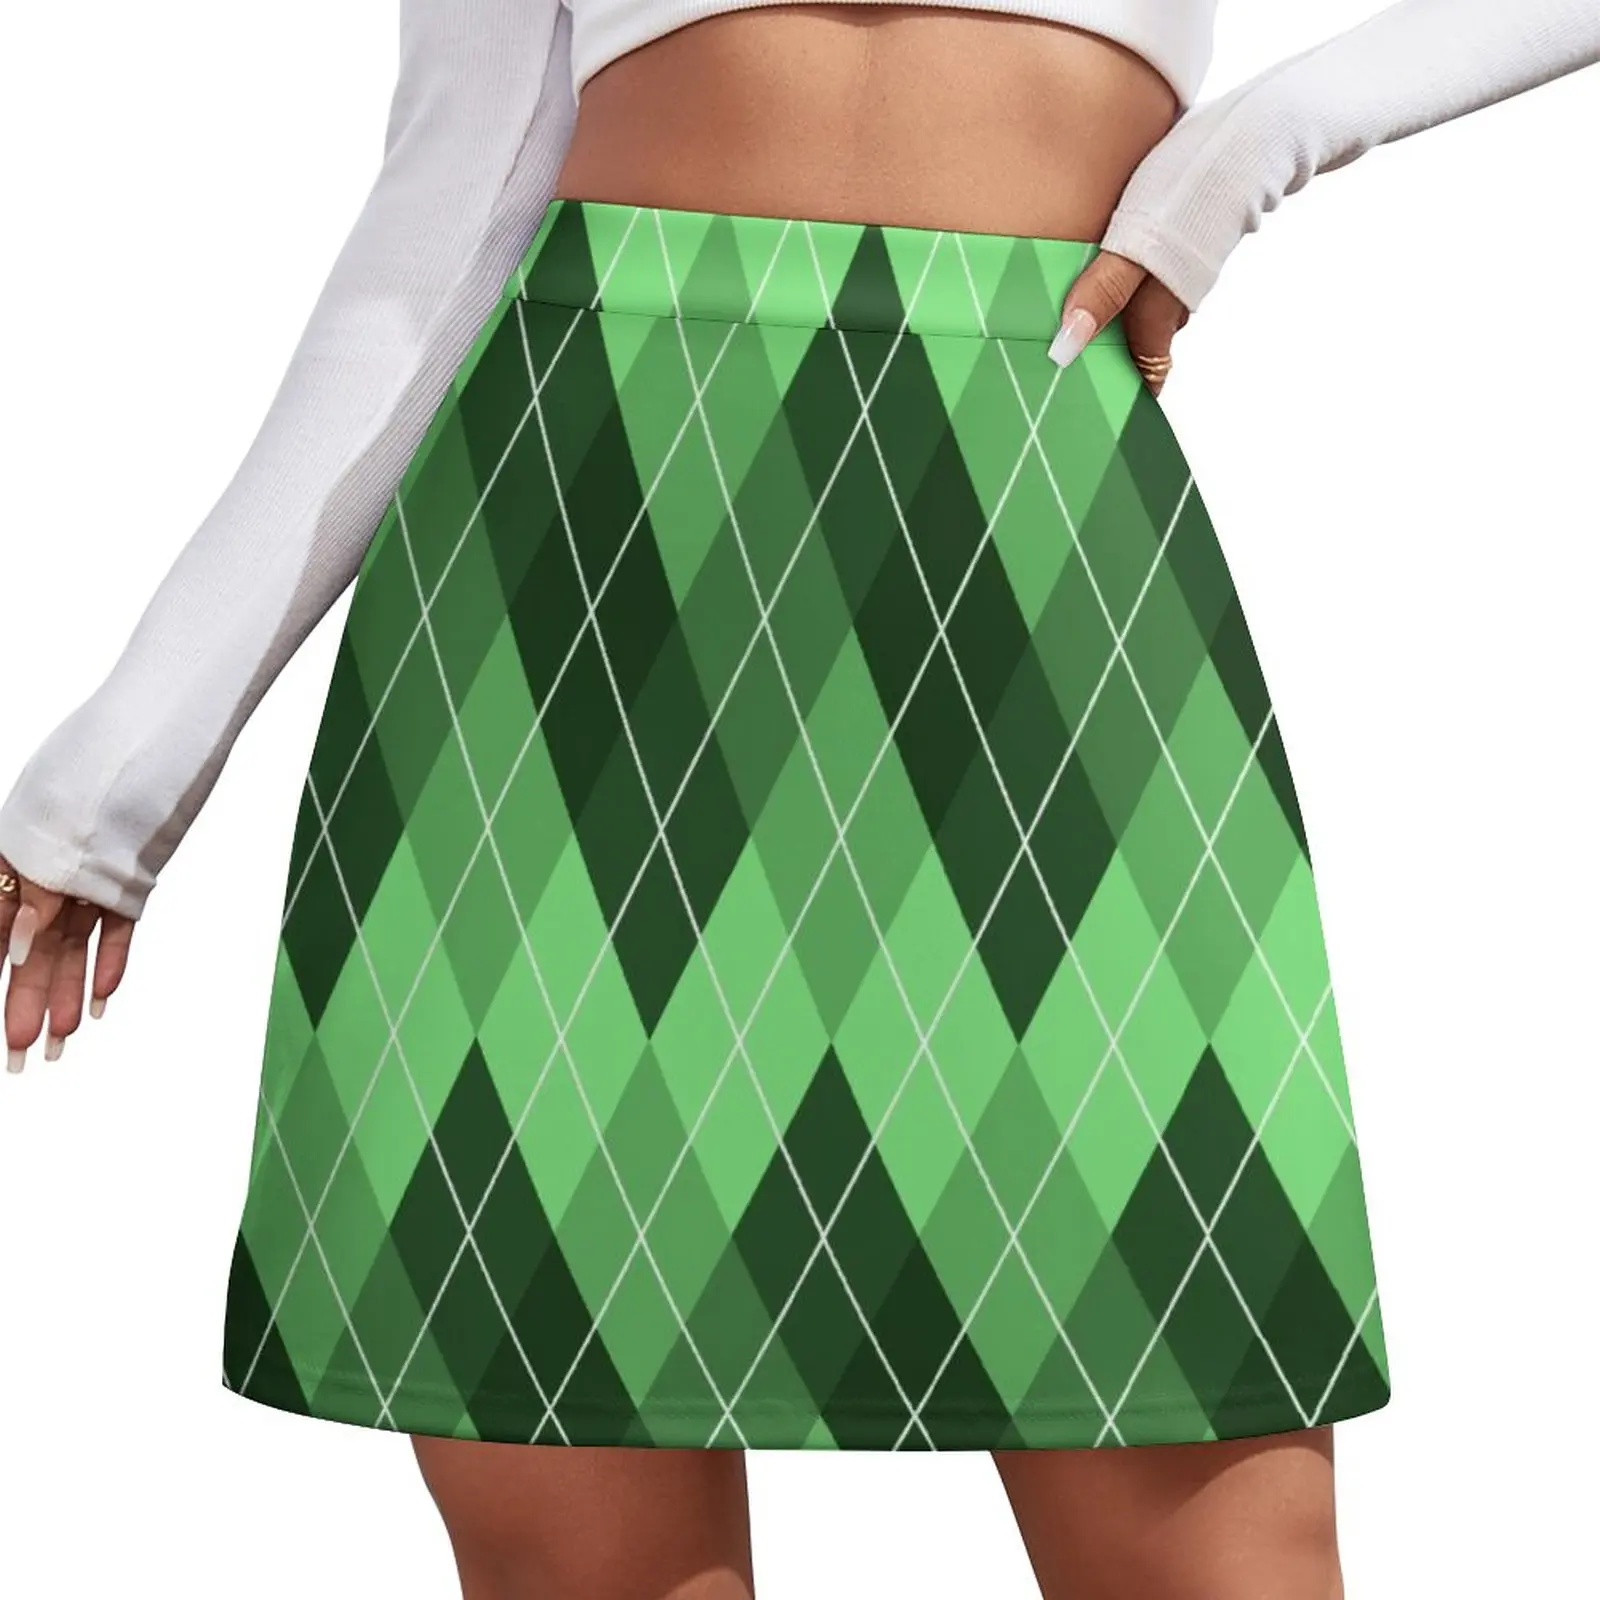 Green Argyle Pattern Mini Skirt mini skirt for women women's stylish skirts [fila]argyle pattern men s drawers